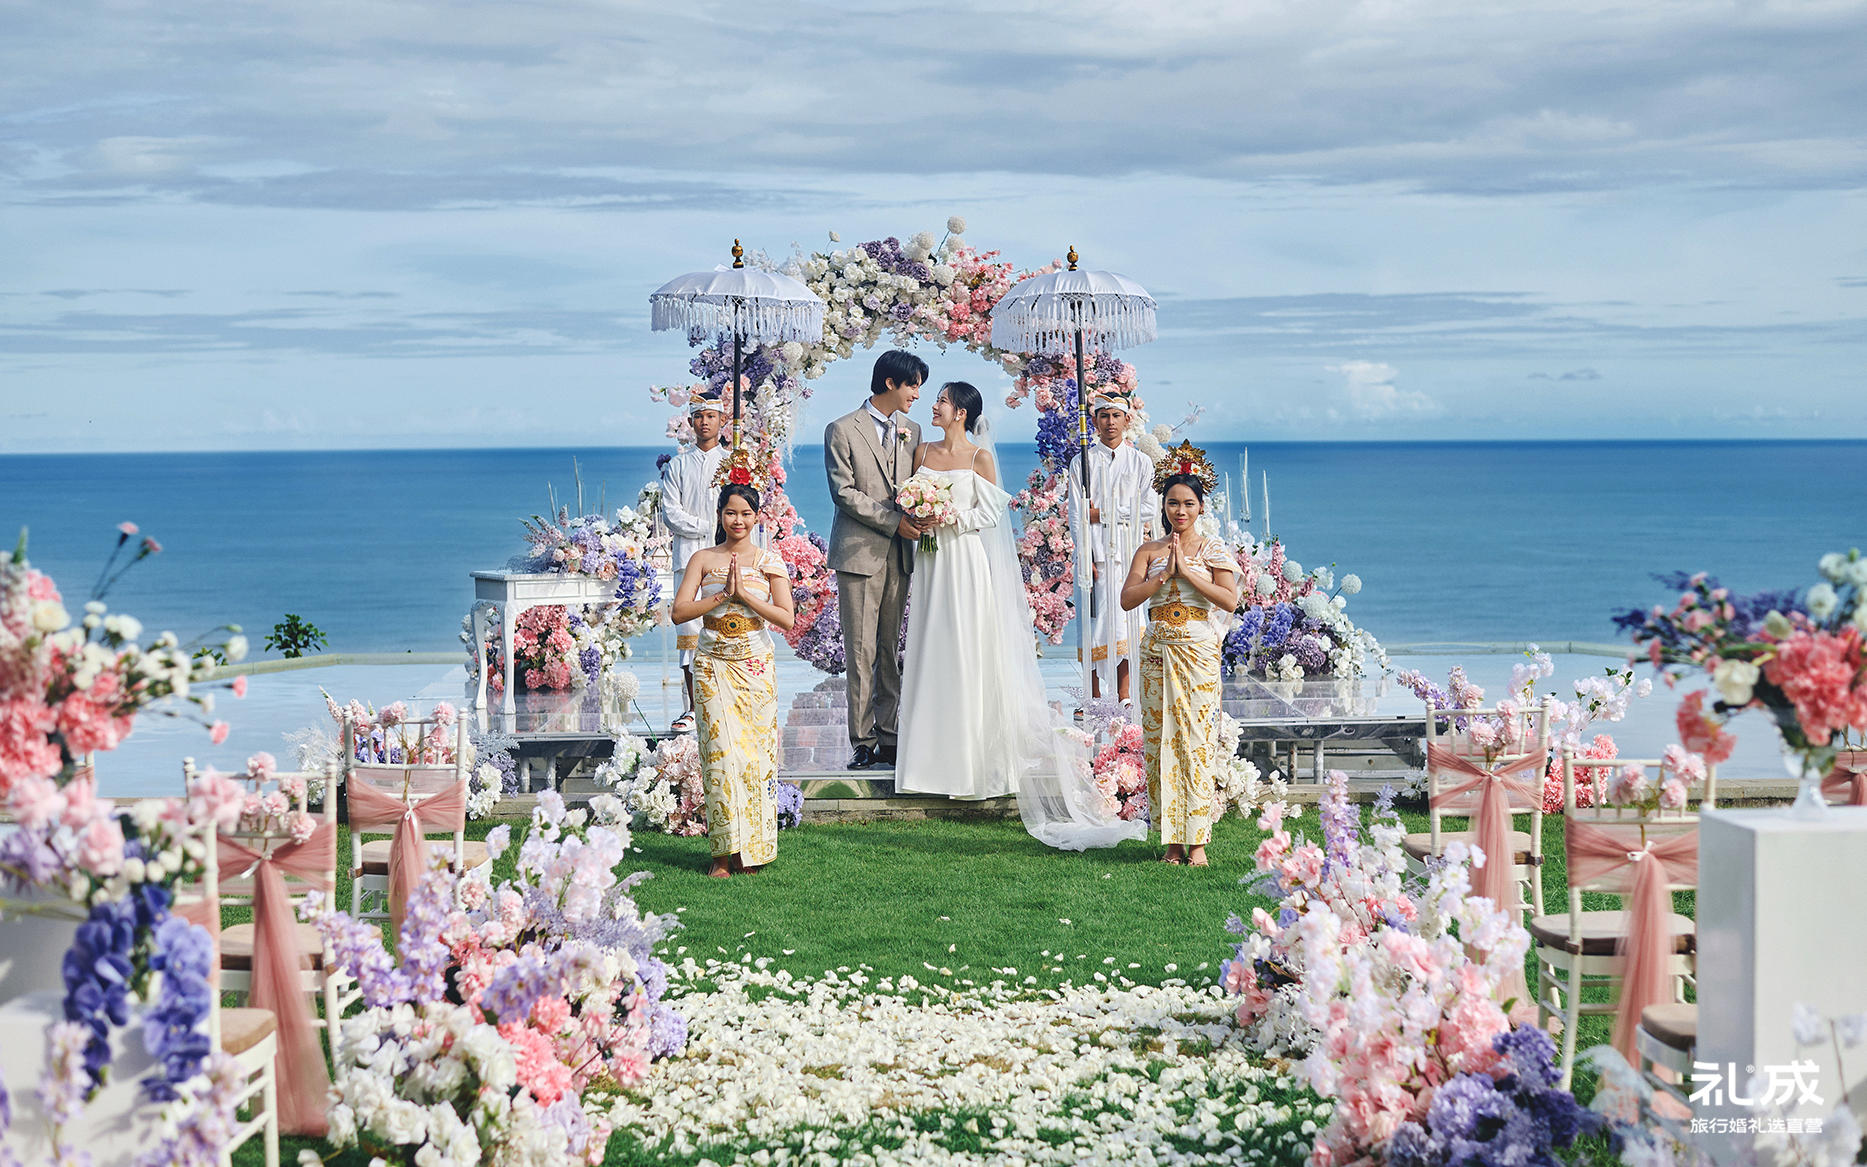 『海外目的地婚礼』巴厘岛海边草坪婚礼